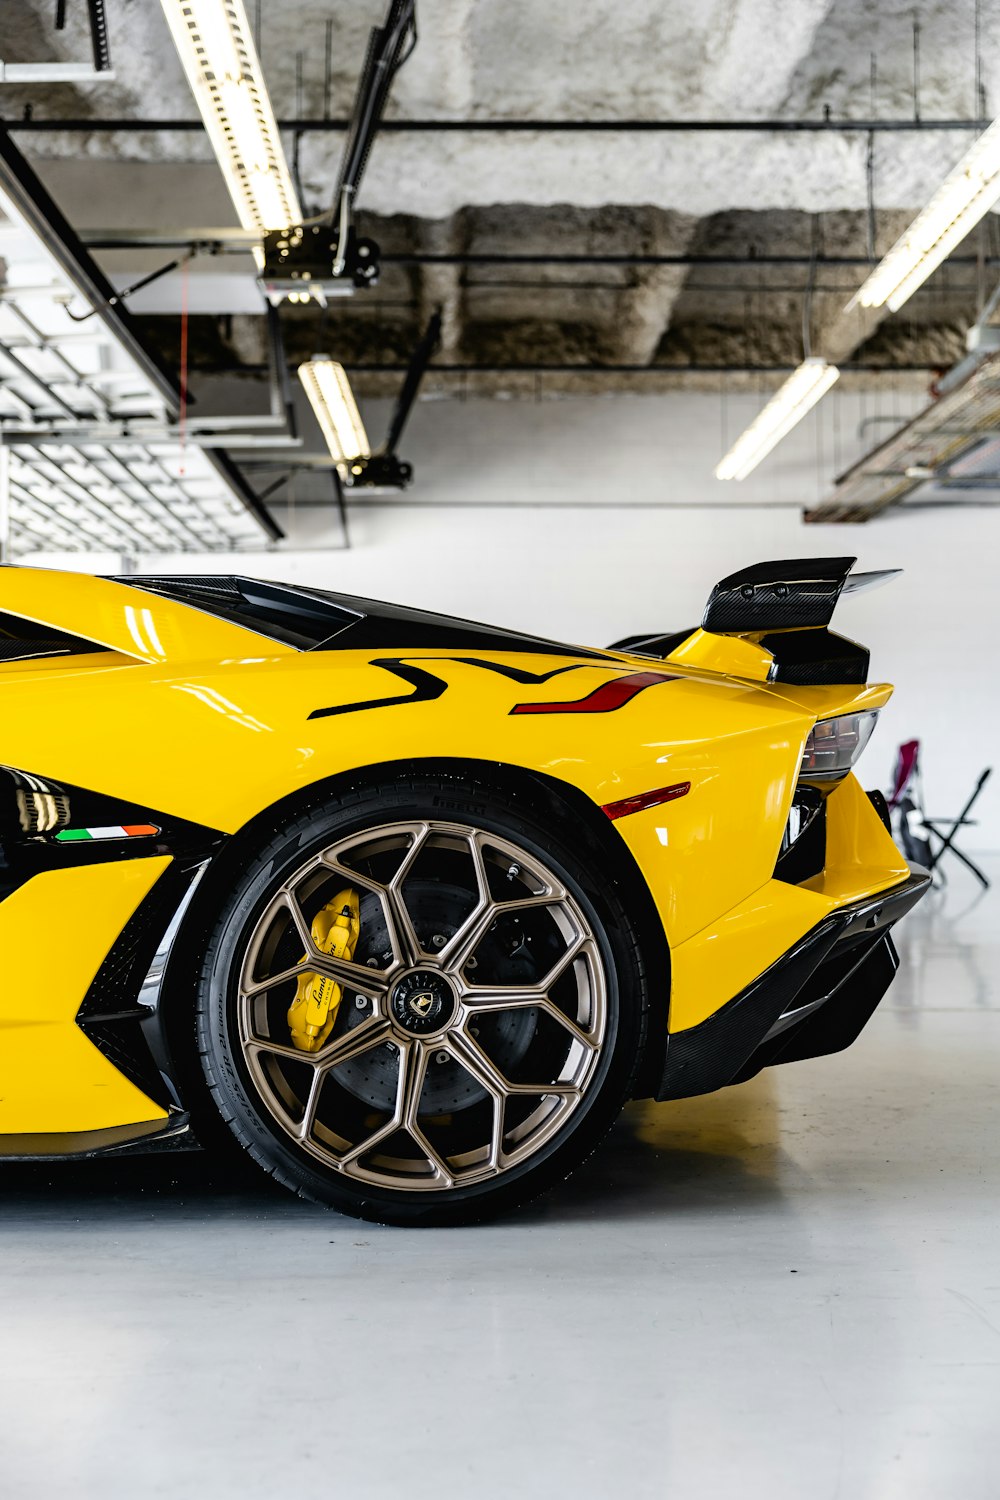 Gelber Lamborghini Aventador in einem weißen Raum